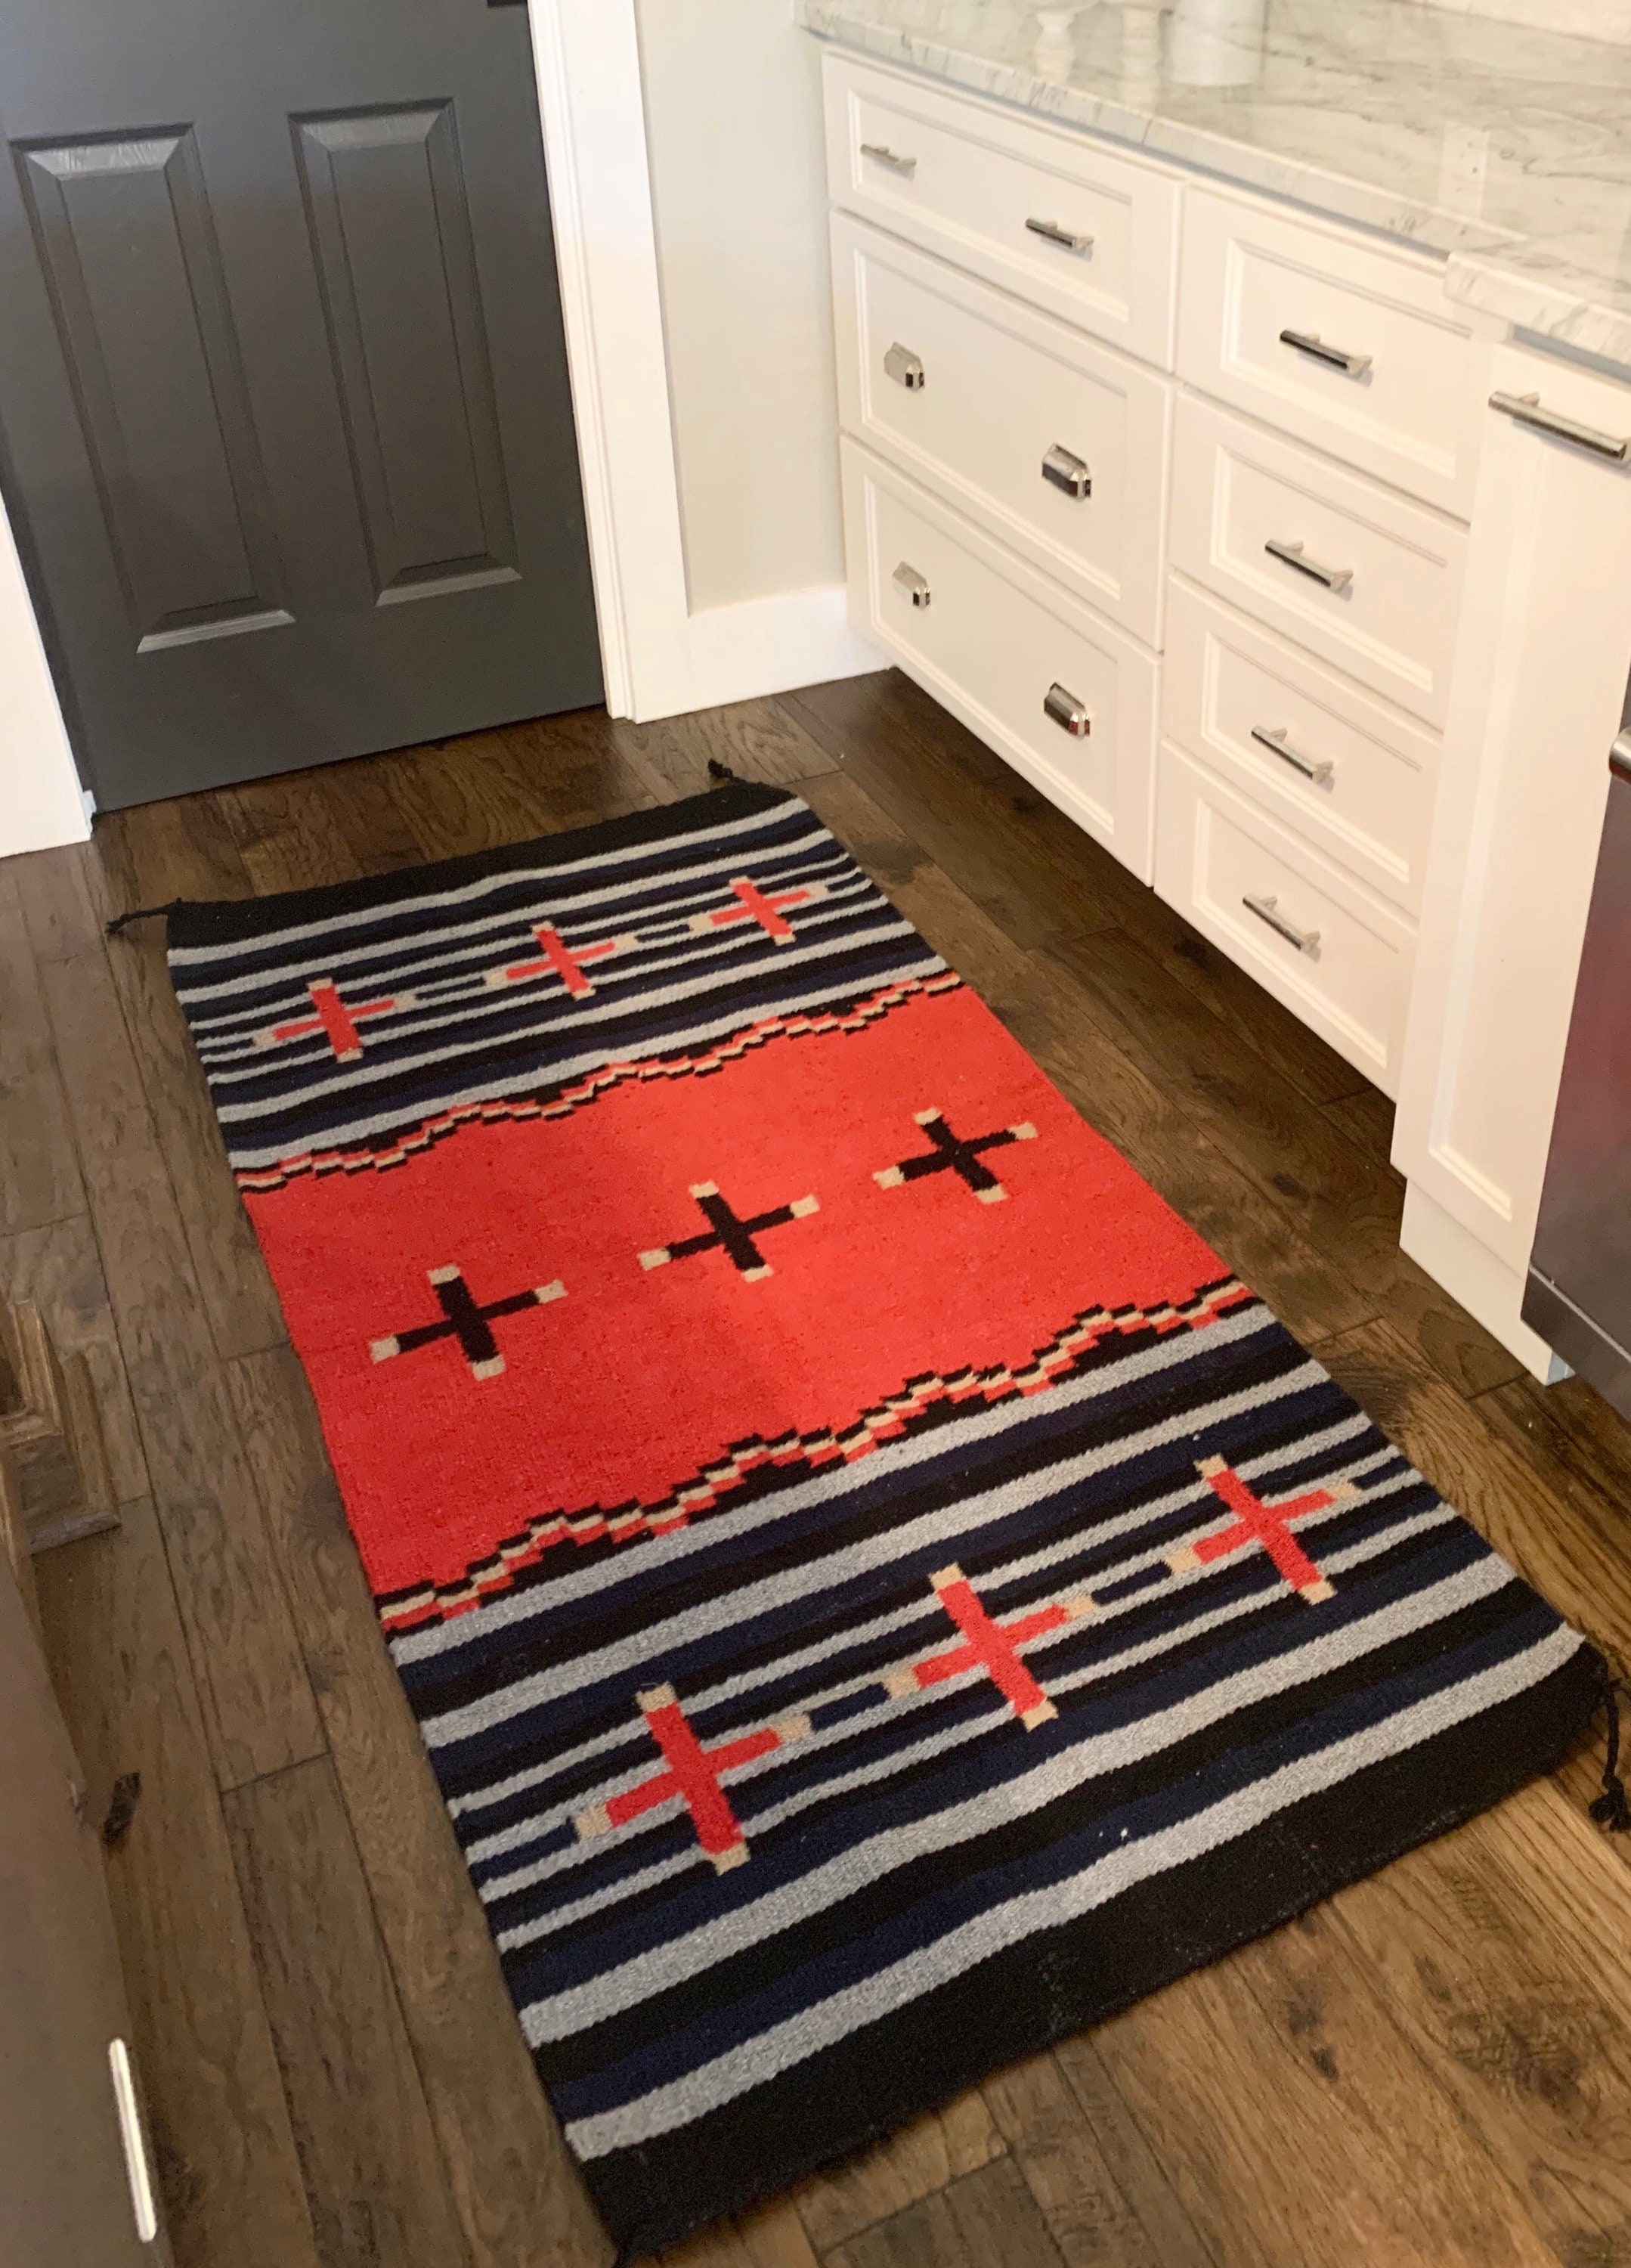 Western Town Wood Barn Nonslip Bedroom Carpet Doormat Bath Mat Kitchen Floor Rug 